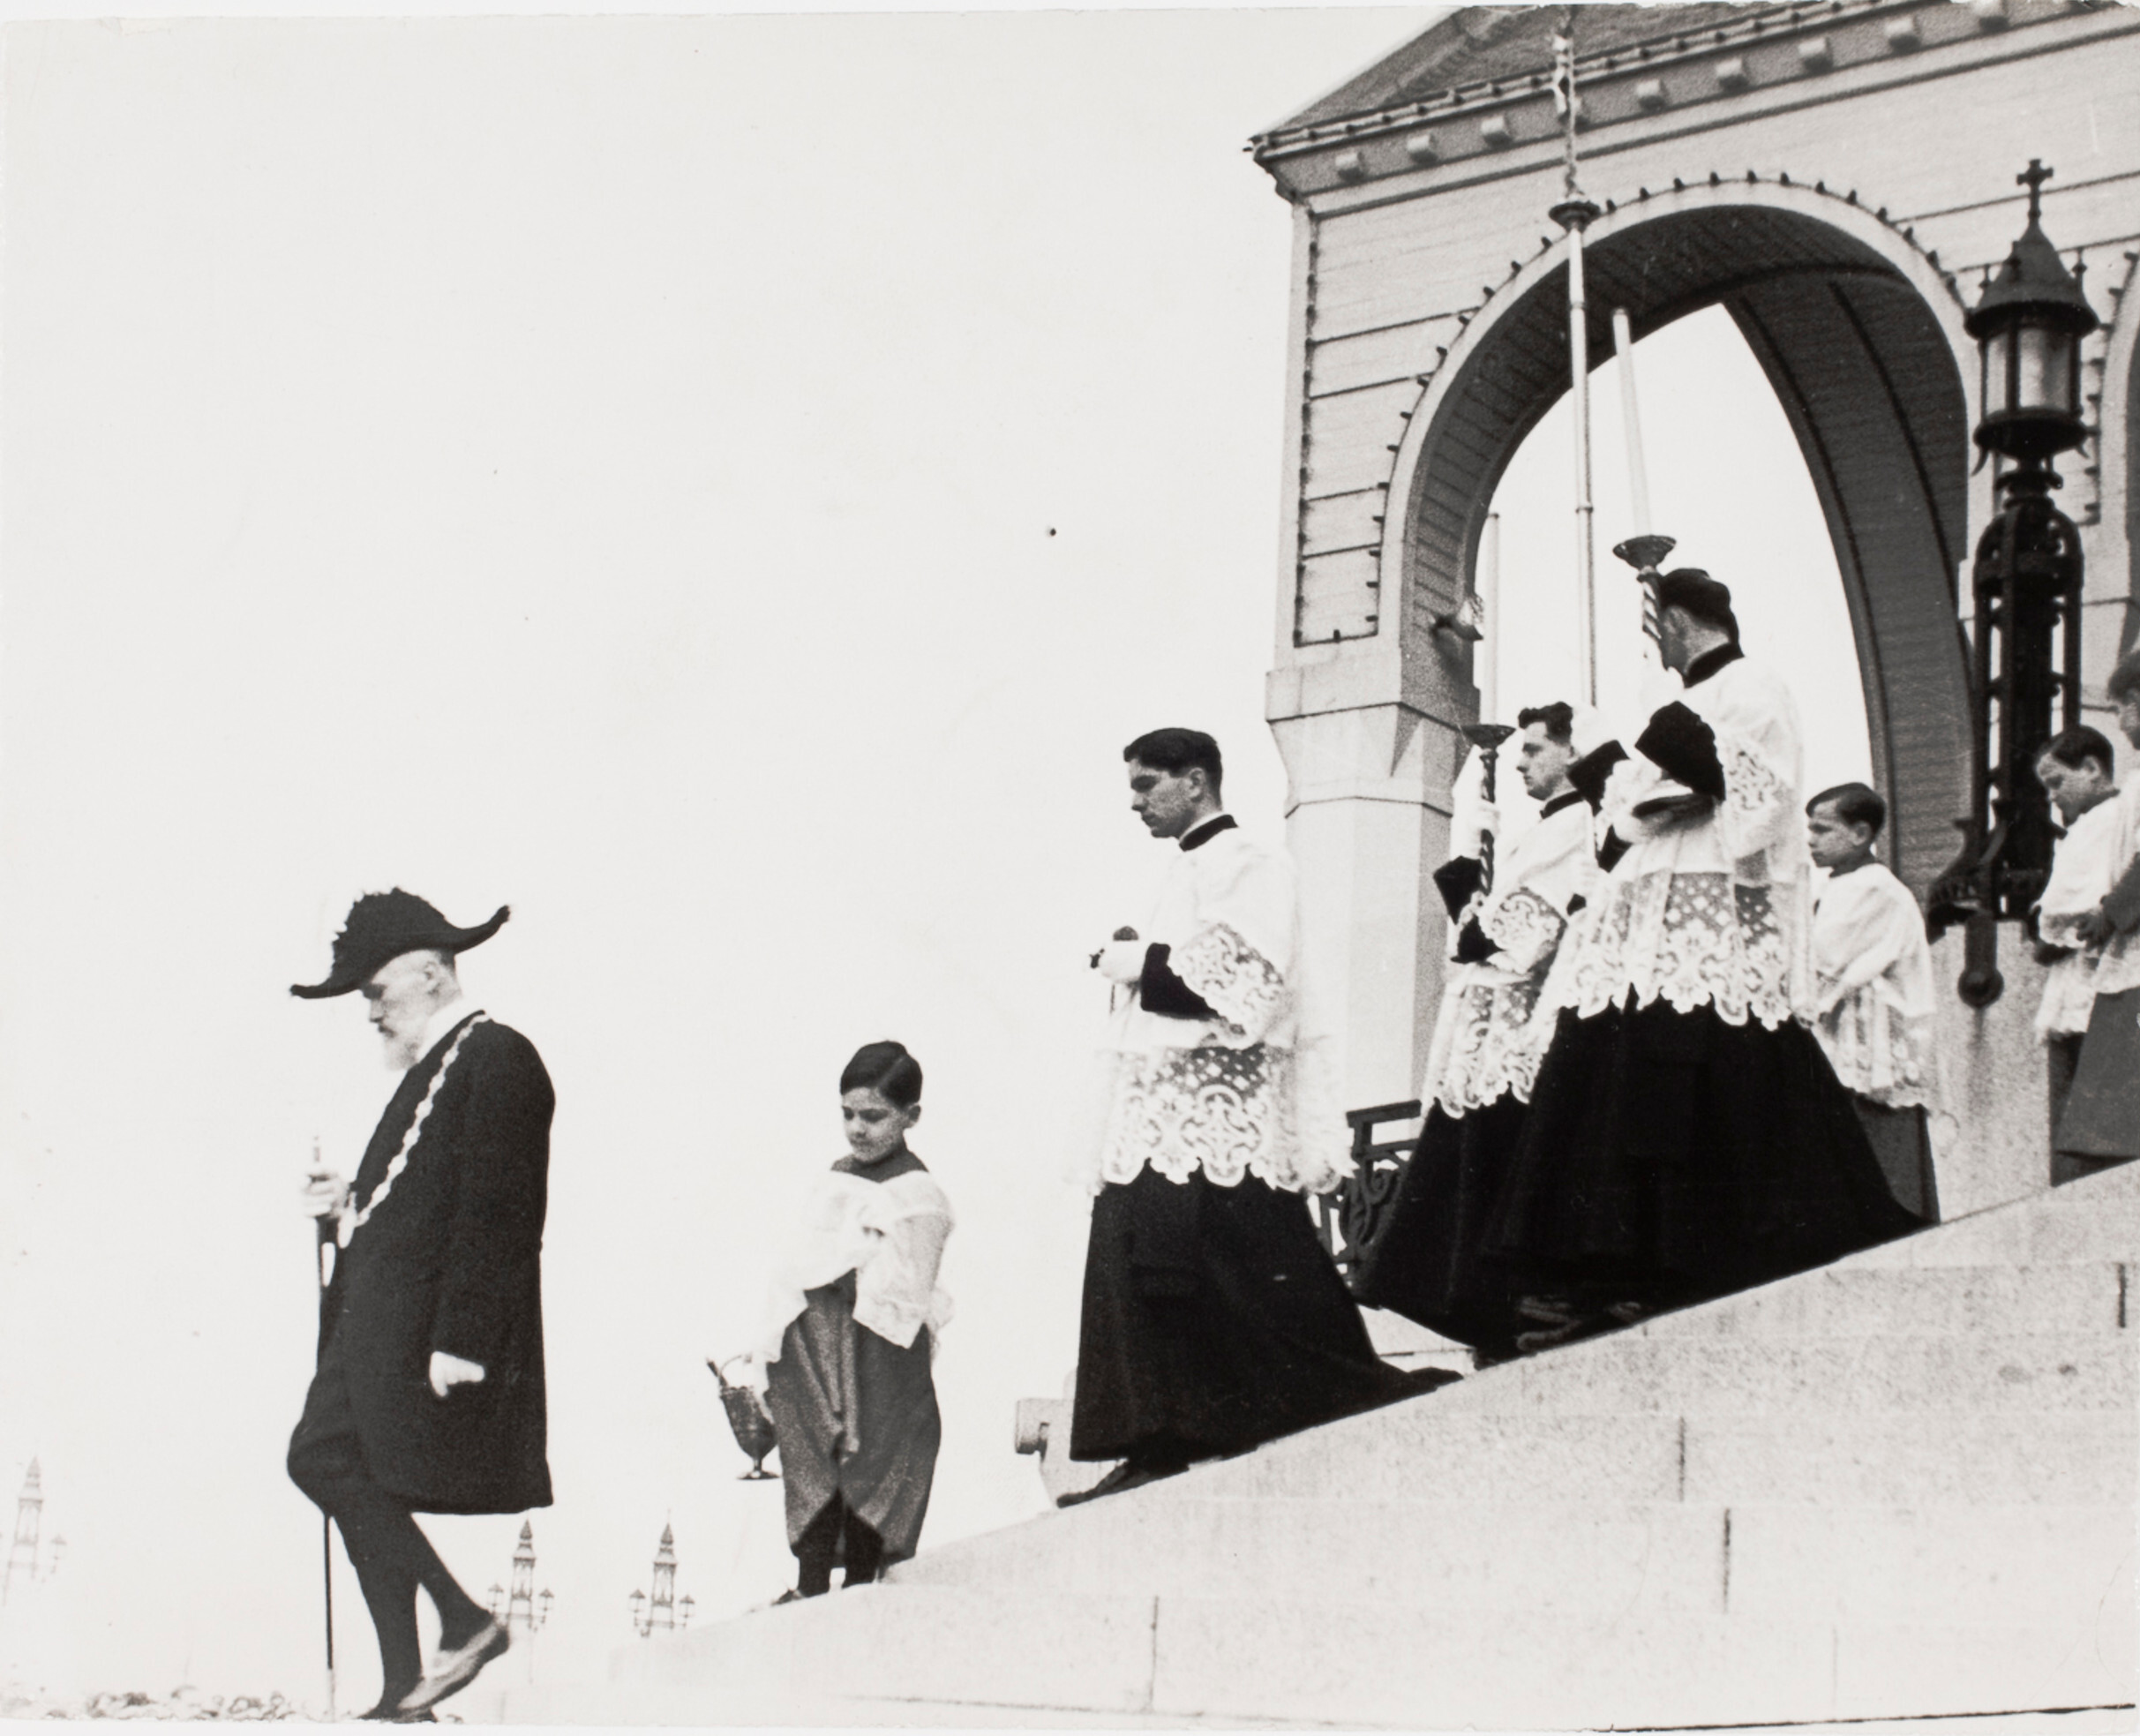 Священники и прислужники спускаются по ступеням, Лизьё, Франция, 1935 год. Фотограф Роберт Капа